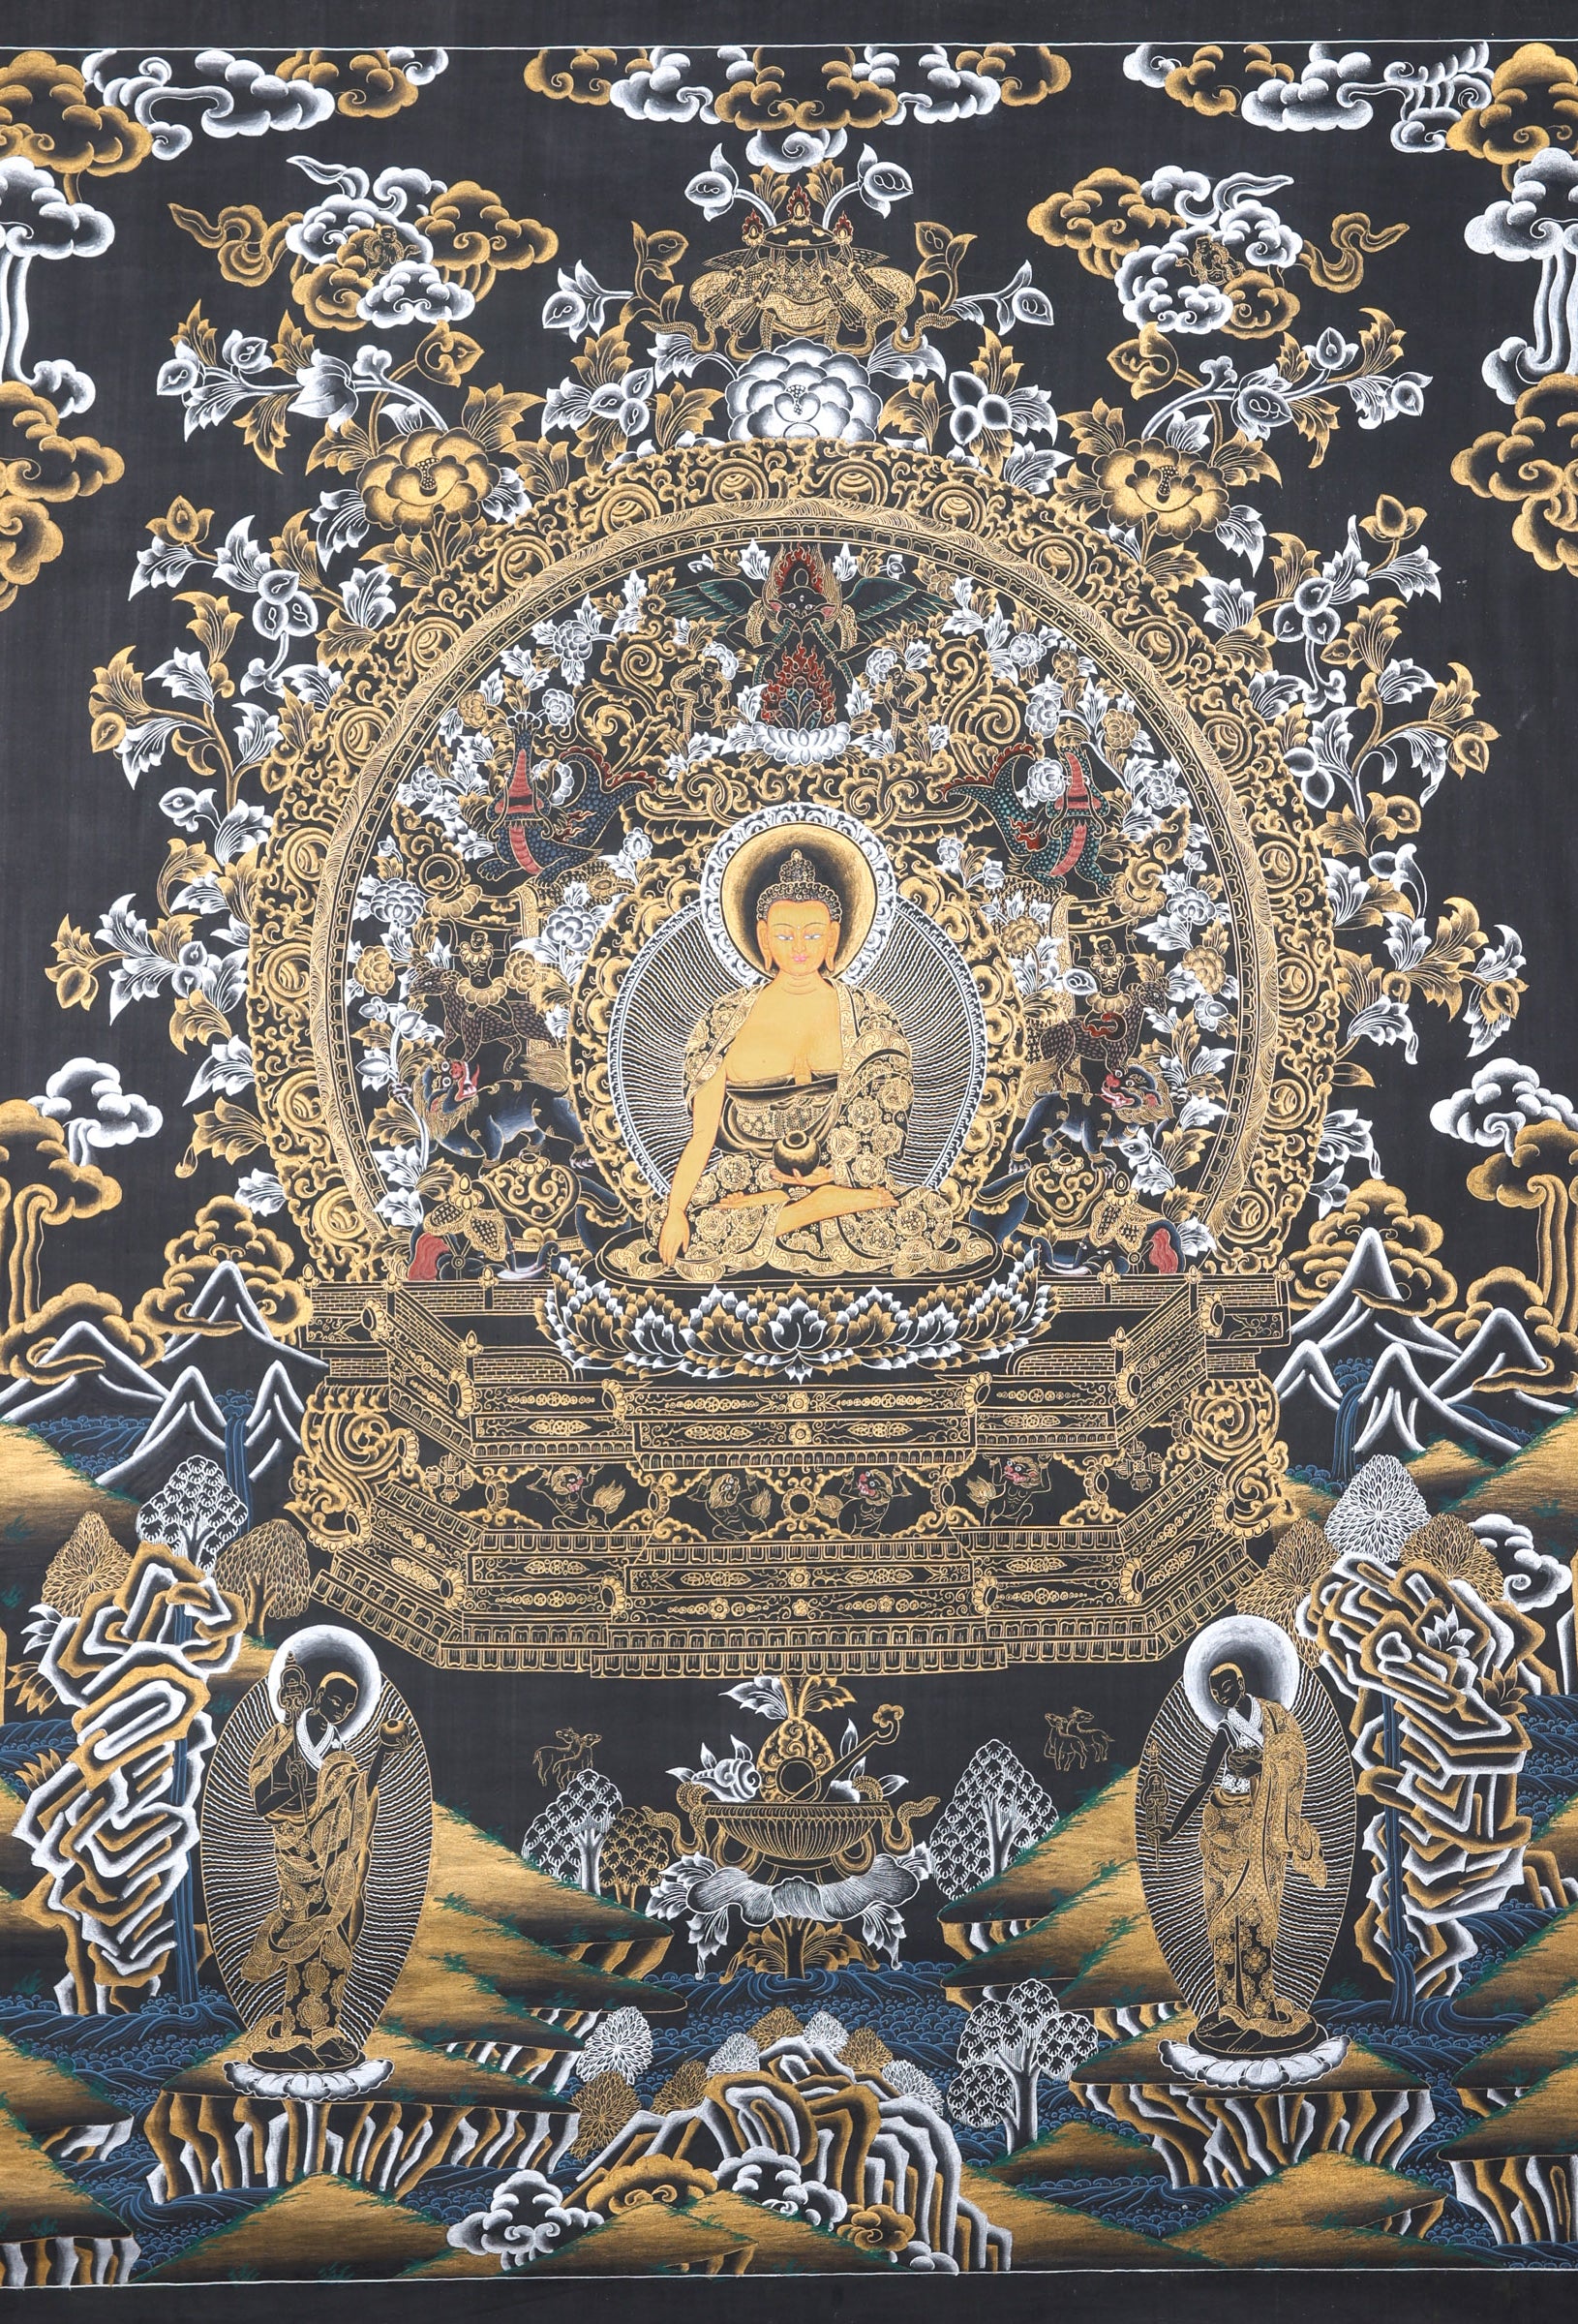 Shakyamuni Buddha Thangka Painting made on cotton canvas.